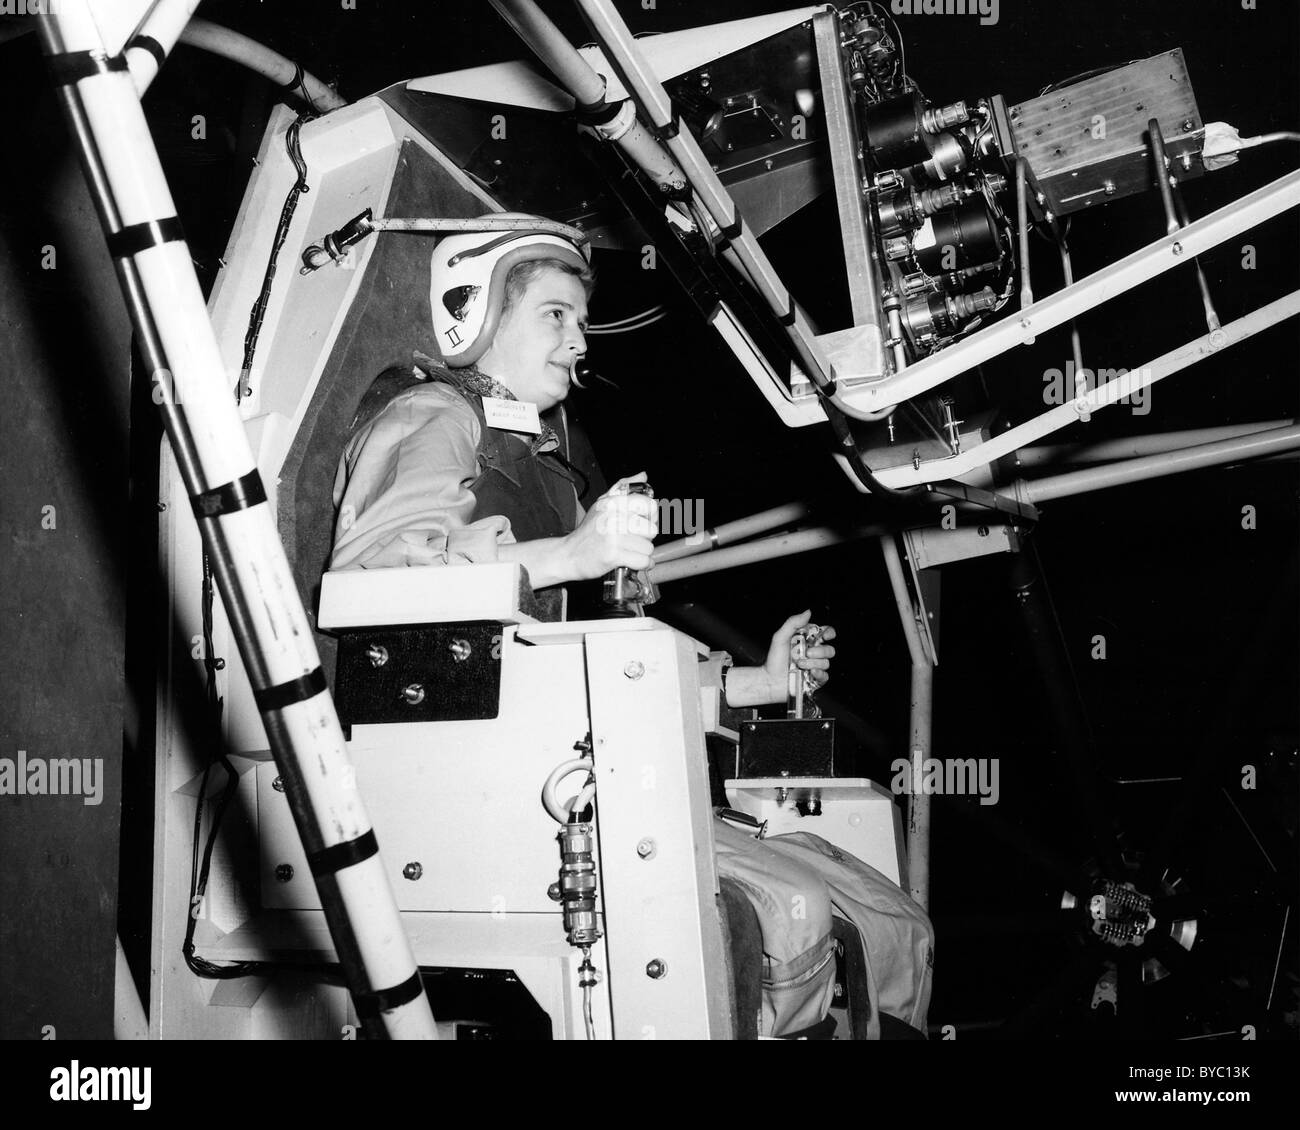 Jerrie Cobb, une femme pilote bien connu dans les années 1950, des essais de forage de cardan dans la soufflerie de l'altitude, l'AWT en avril 1960. Banque D'Images